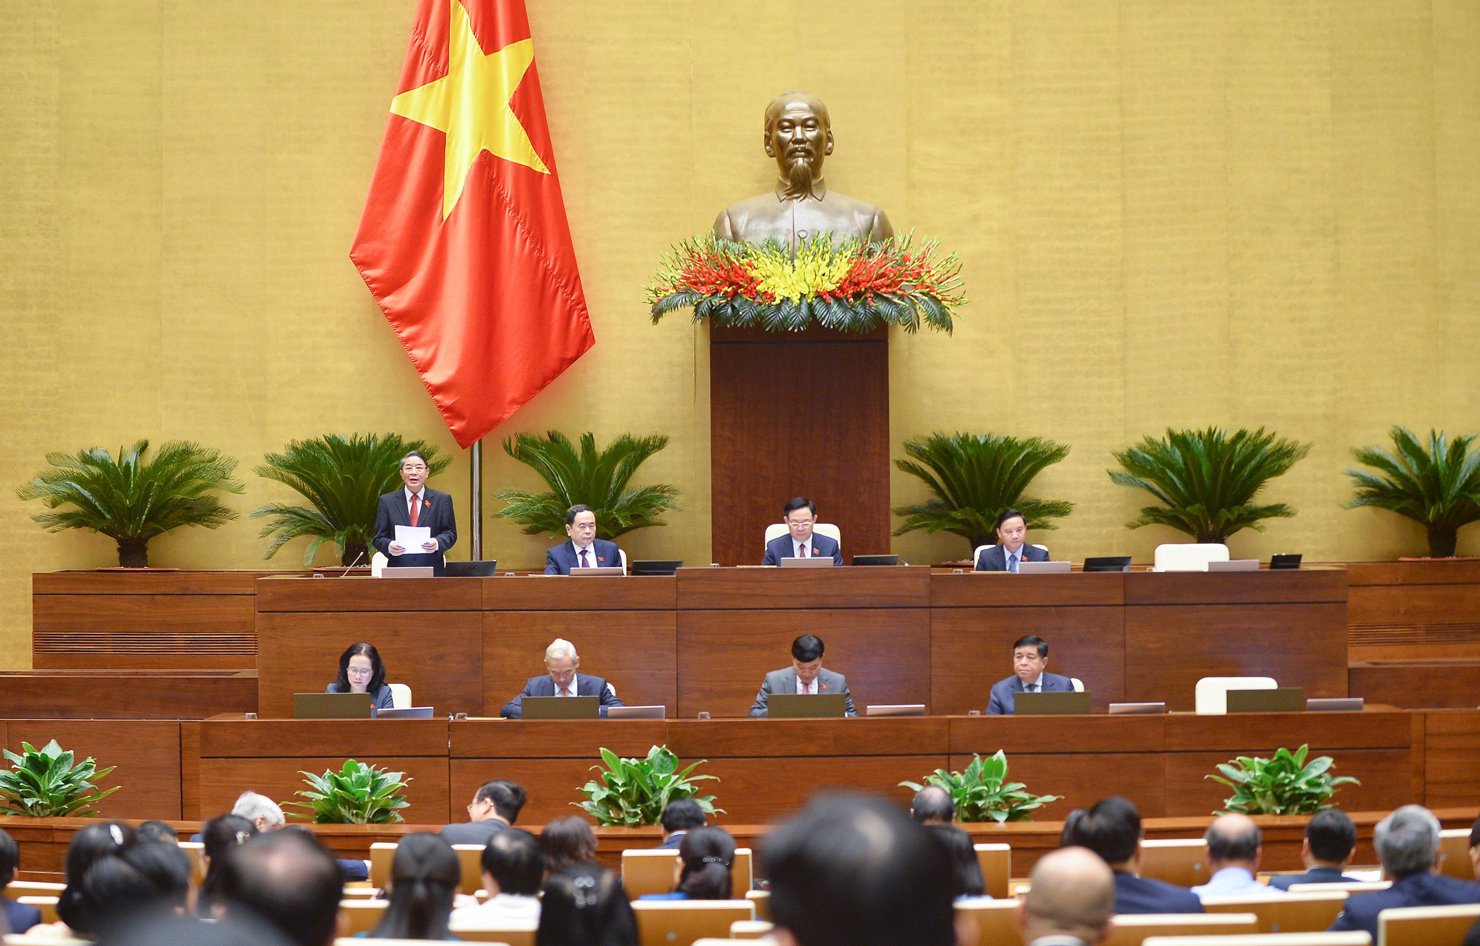 Phó Chủ tịch Quốc hội Nguyễn Đức Hải điều hành thảo luận ở hội trường về kết quả thực hiện kế hoạch phát triển kinh tế - xã hội. 